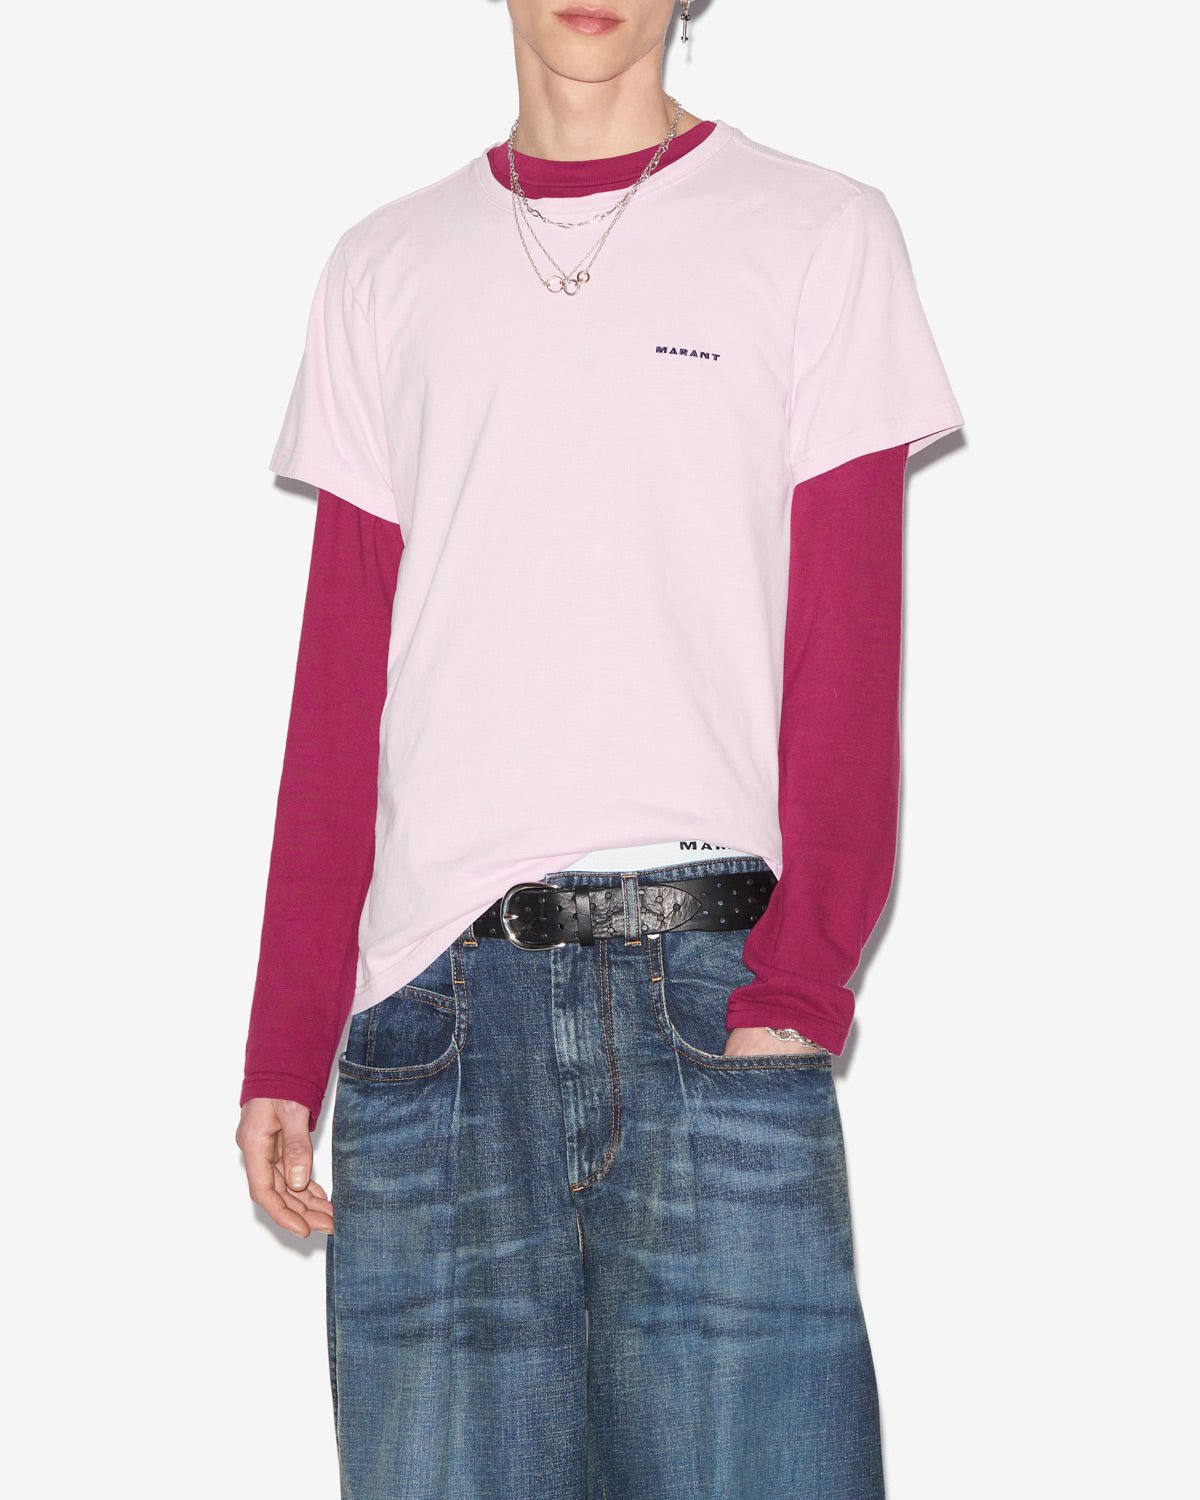 재퍼(zafferh) 티셔츠 Man Light pink 5